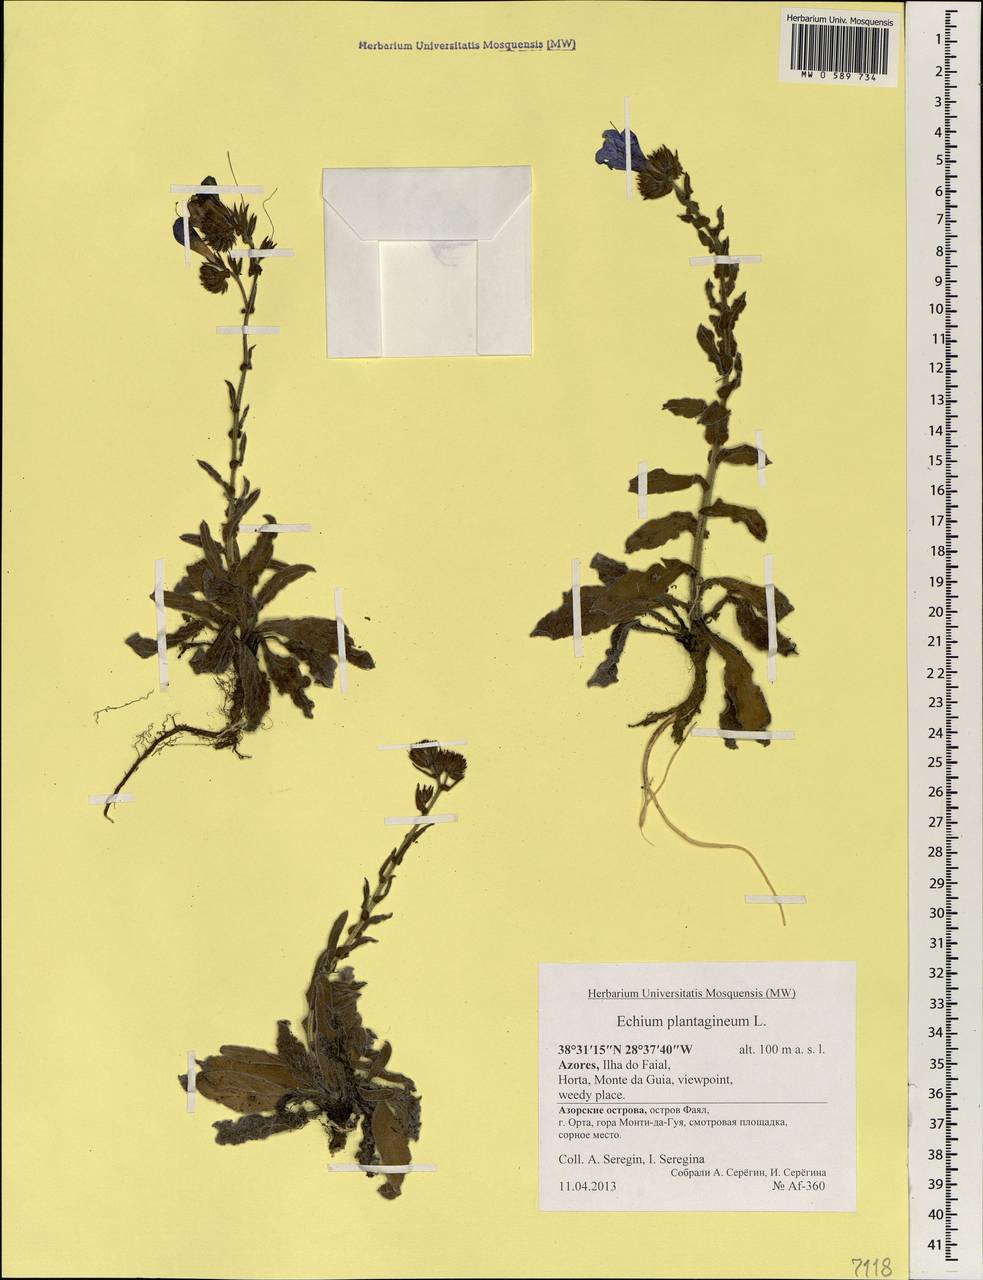 Echium plantagineum L., Africa (AFR) (Portugal)